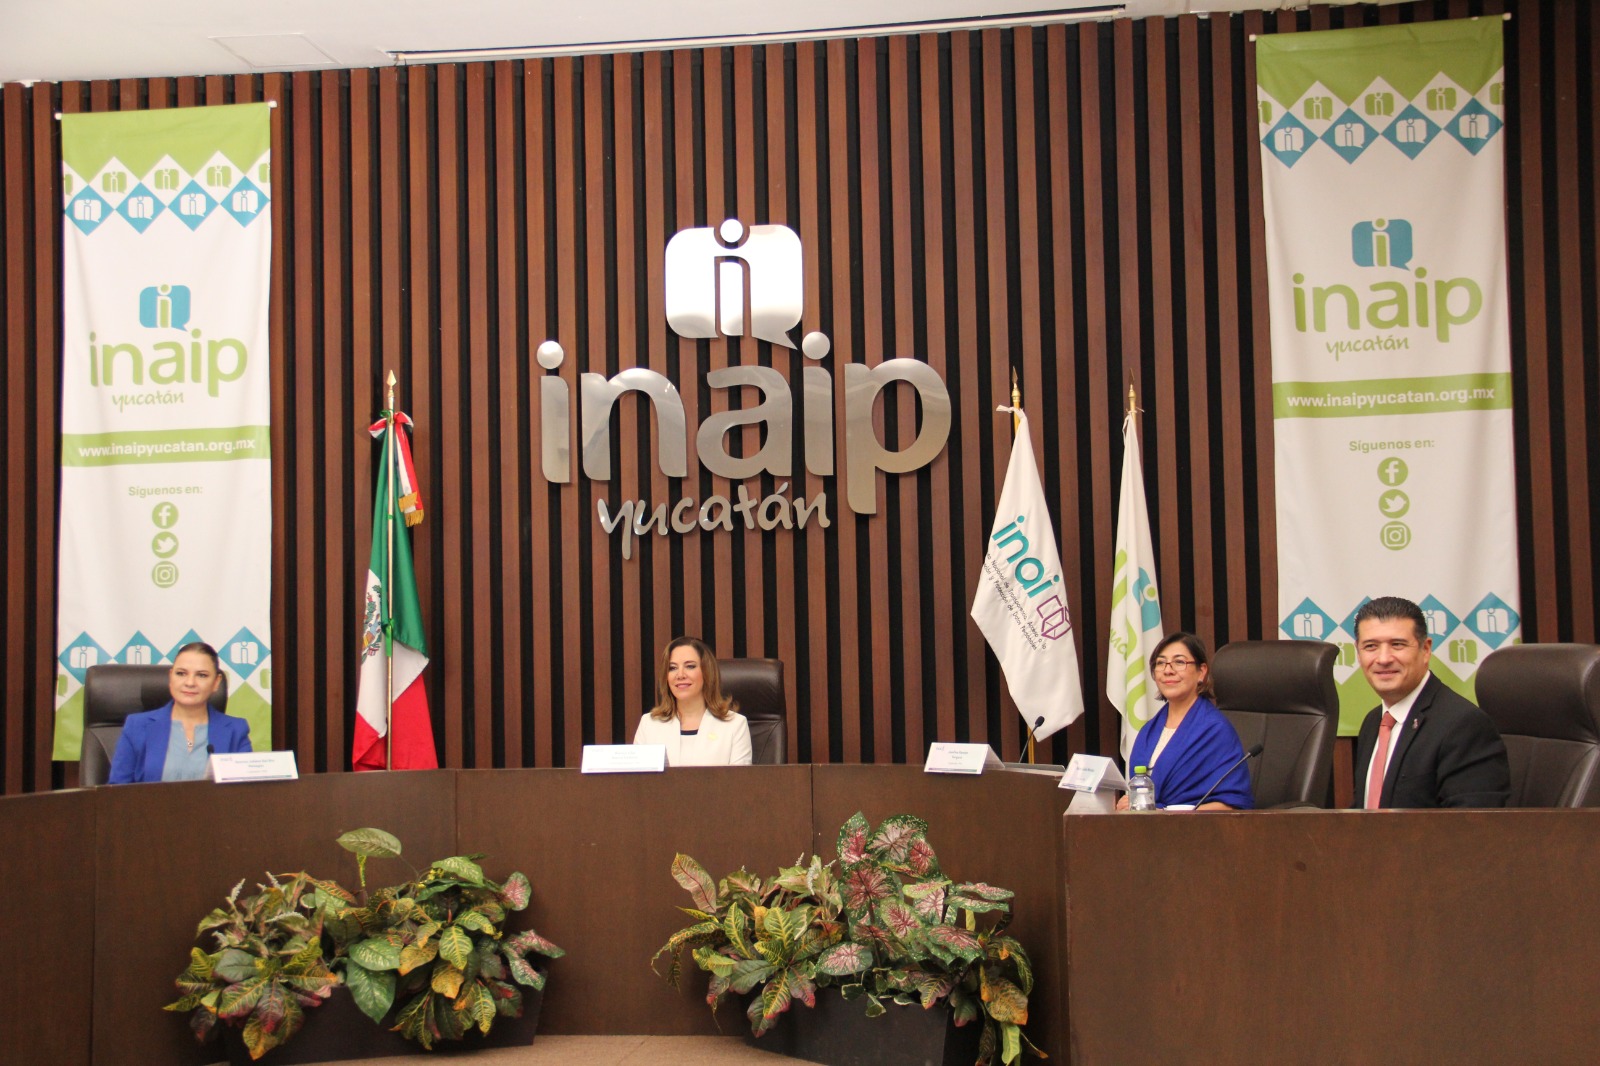 INAI e INAIP Yucatán hacen un llamado a la defensa de la transparencia.